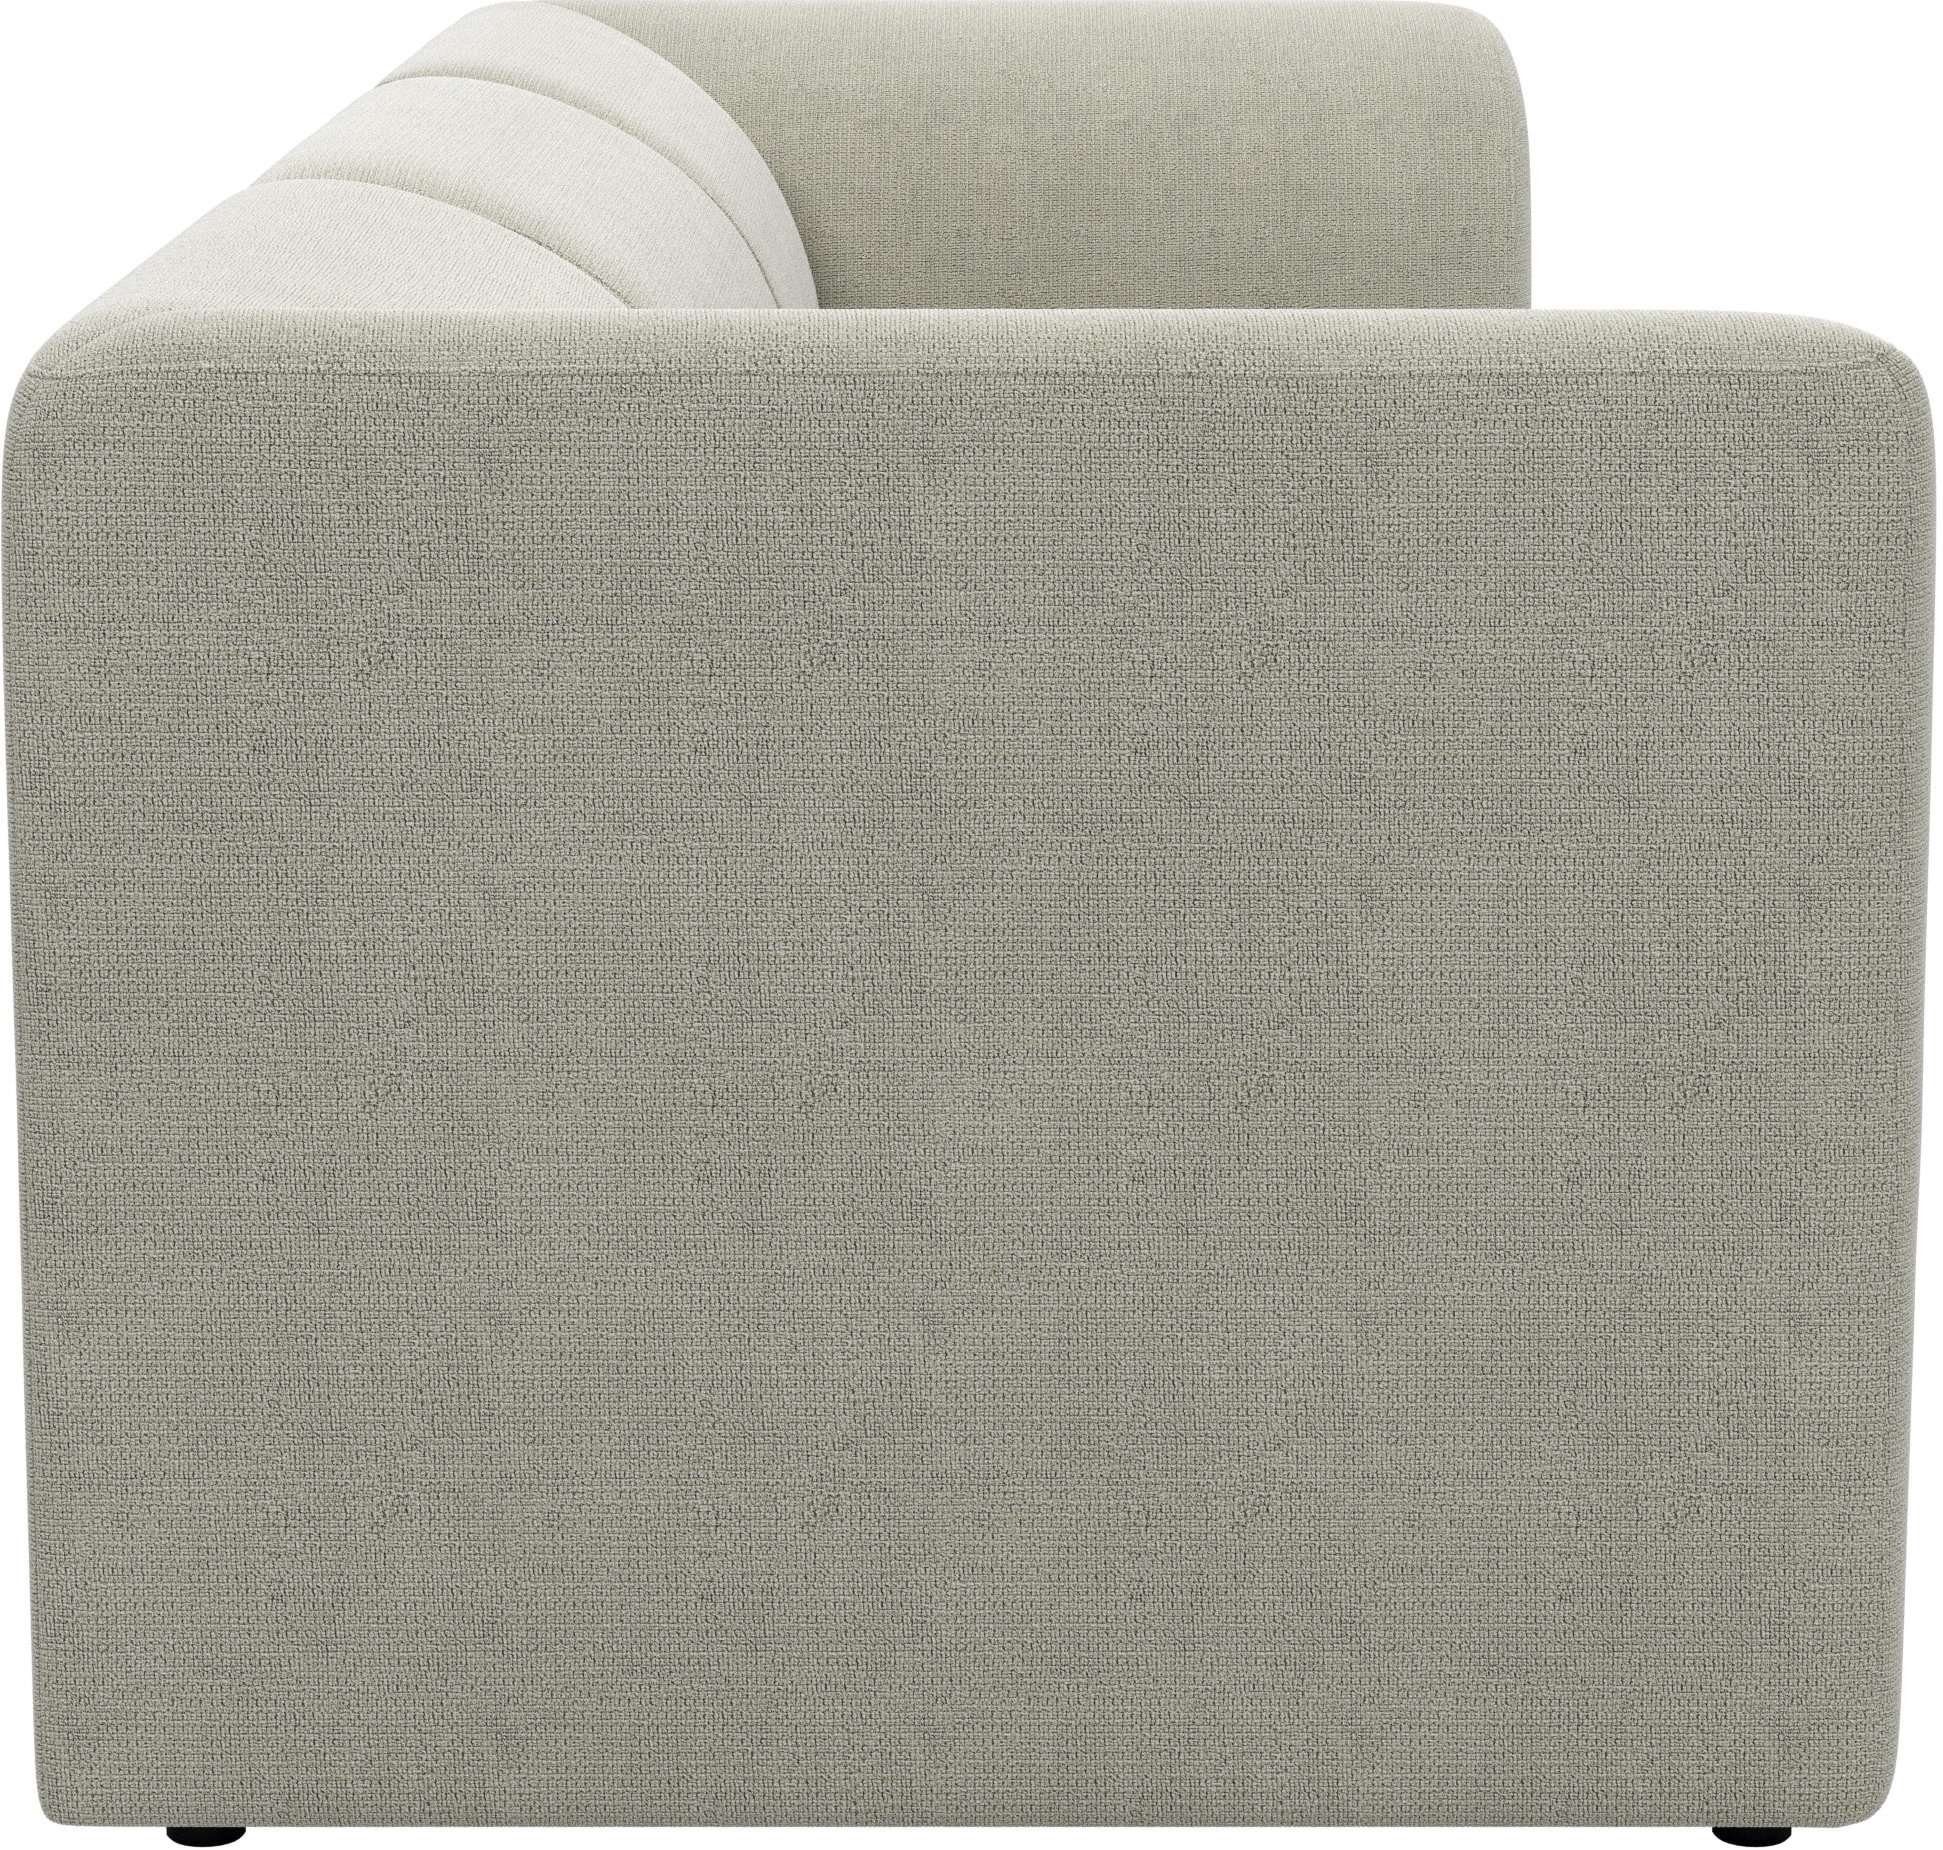 by Home Sofa, modulares Floria, in trendigen 3-Sitzer Komfortschaum-Polsterung mit Gercke LeGer Lena Farben,